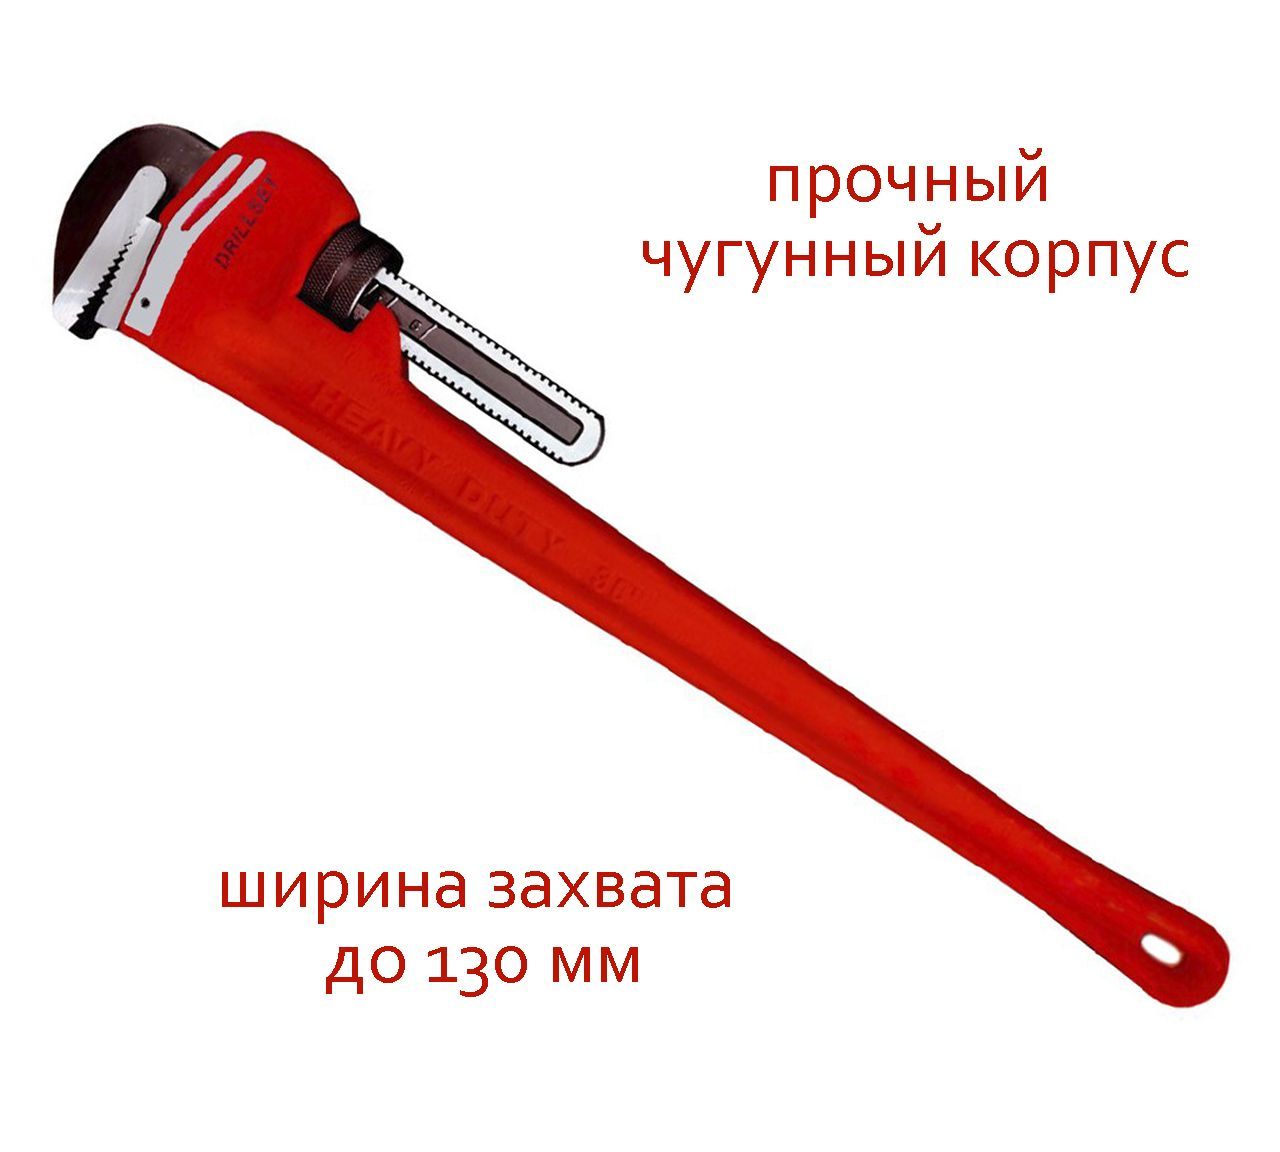 Прямой трубный ключ DRILLSET 36 DS270336, ширина захвата до 130 мм, из чугуна и стали